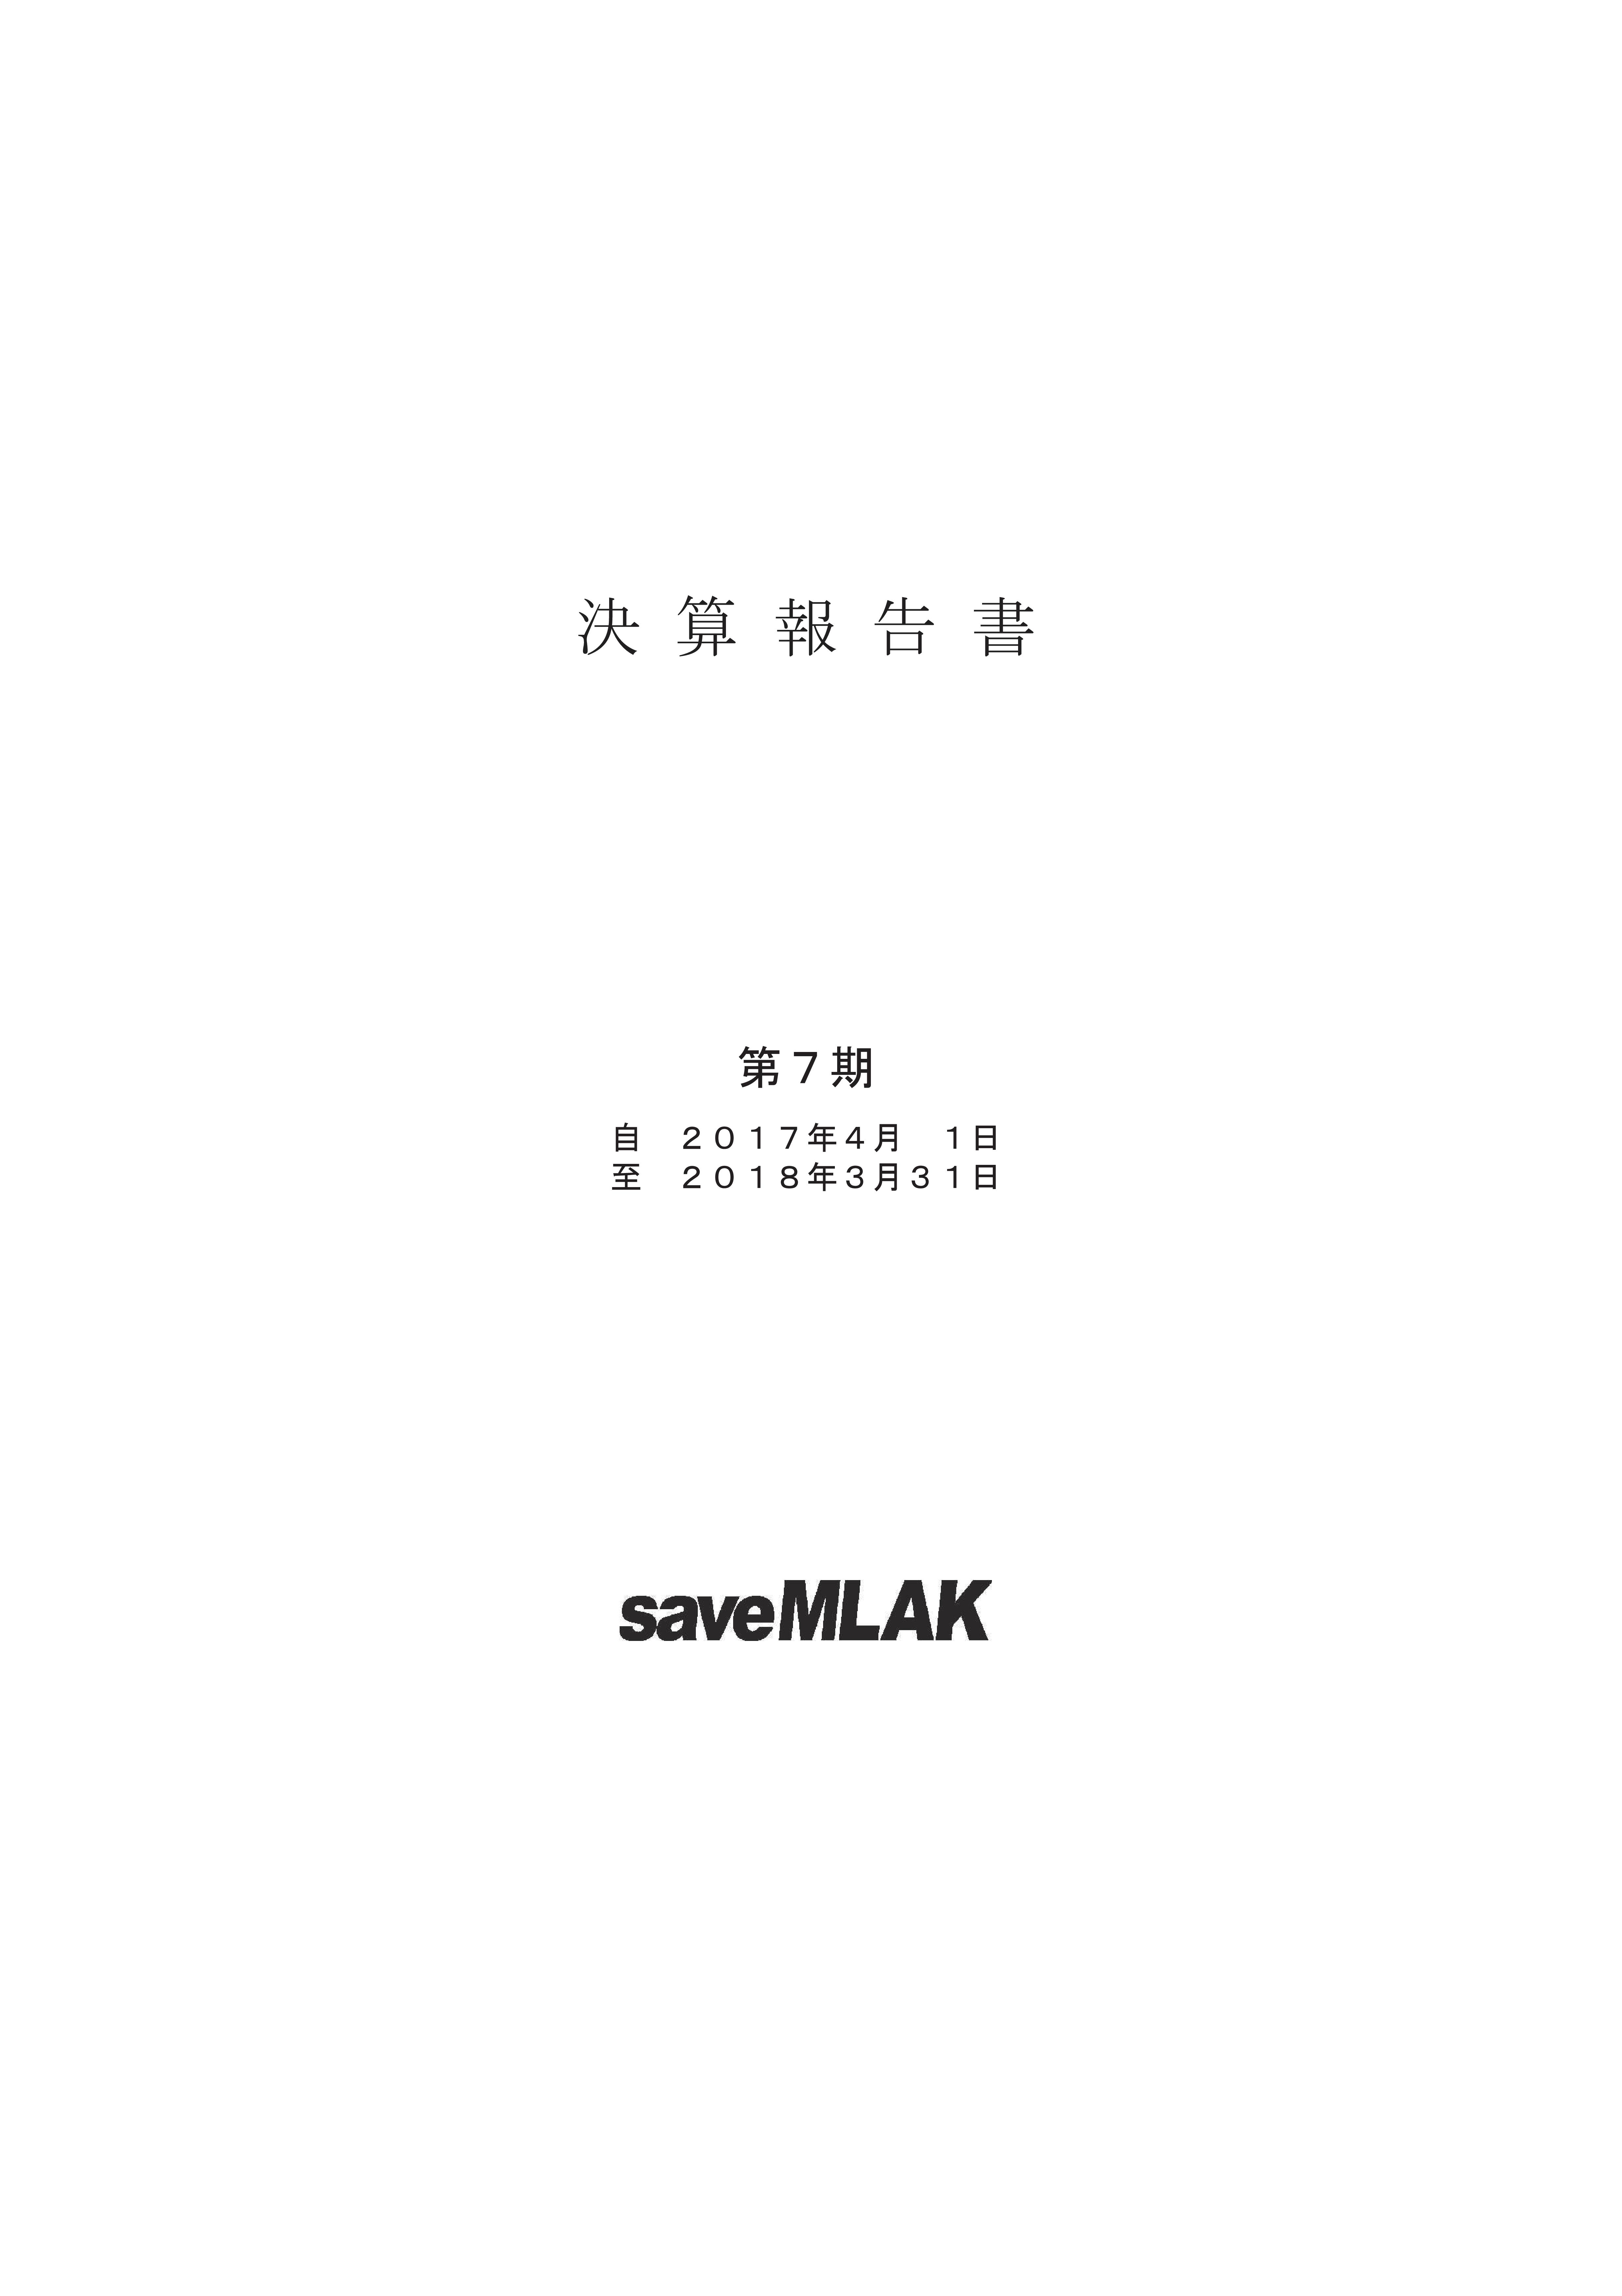 saveMLAK17年度決算報告書 表紙.jpg